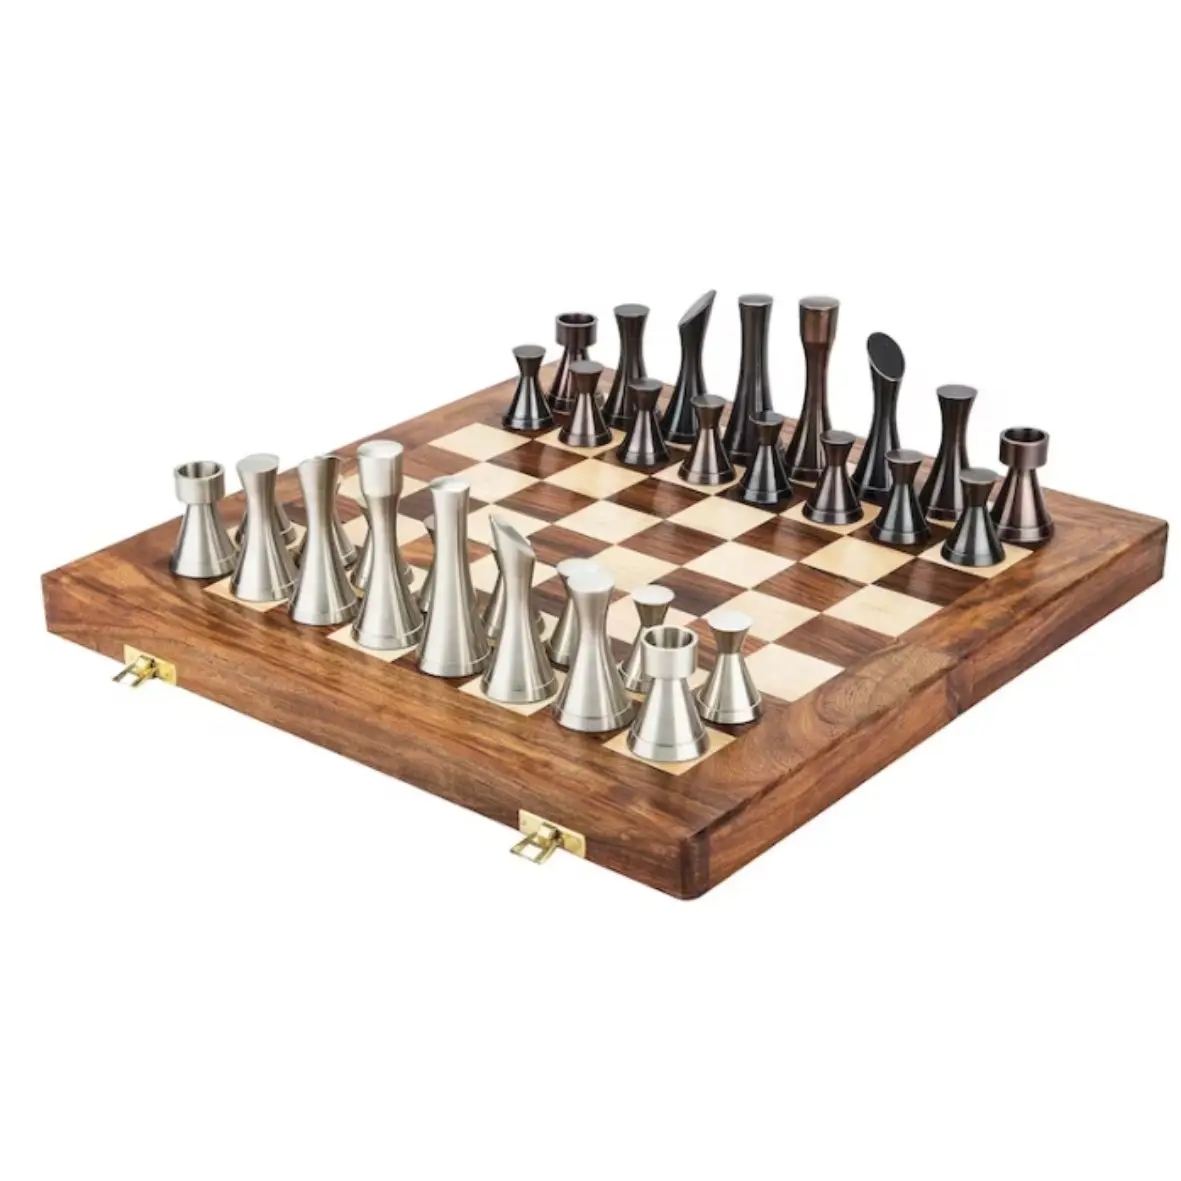 لوح شطرنج من النحاس و الفضة, لوح شطرنج من المعدن بتصميم ملكي قابل للطي ، يتناسب مع قطع شطرنج محتشمة ، و متوفر في حجمين من النحاس و الفضي.